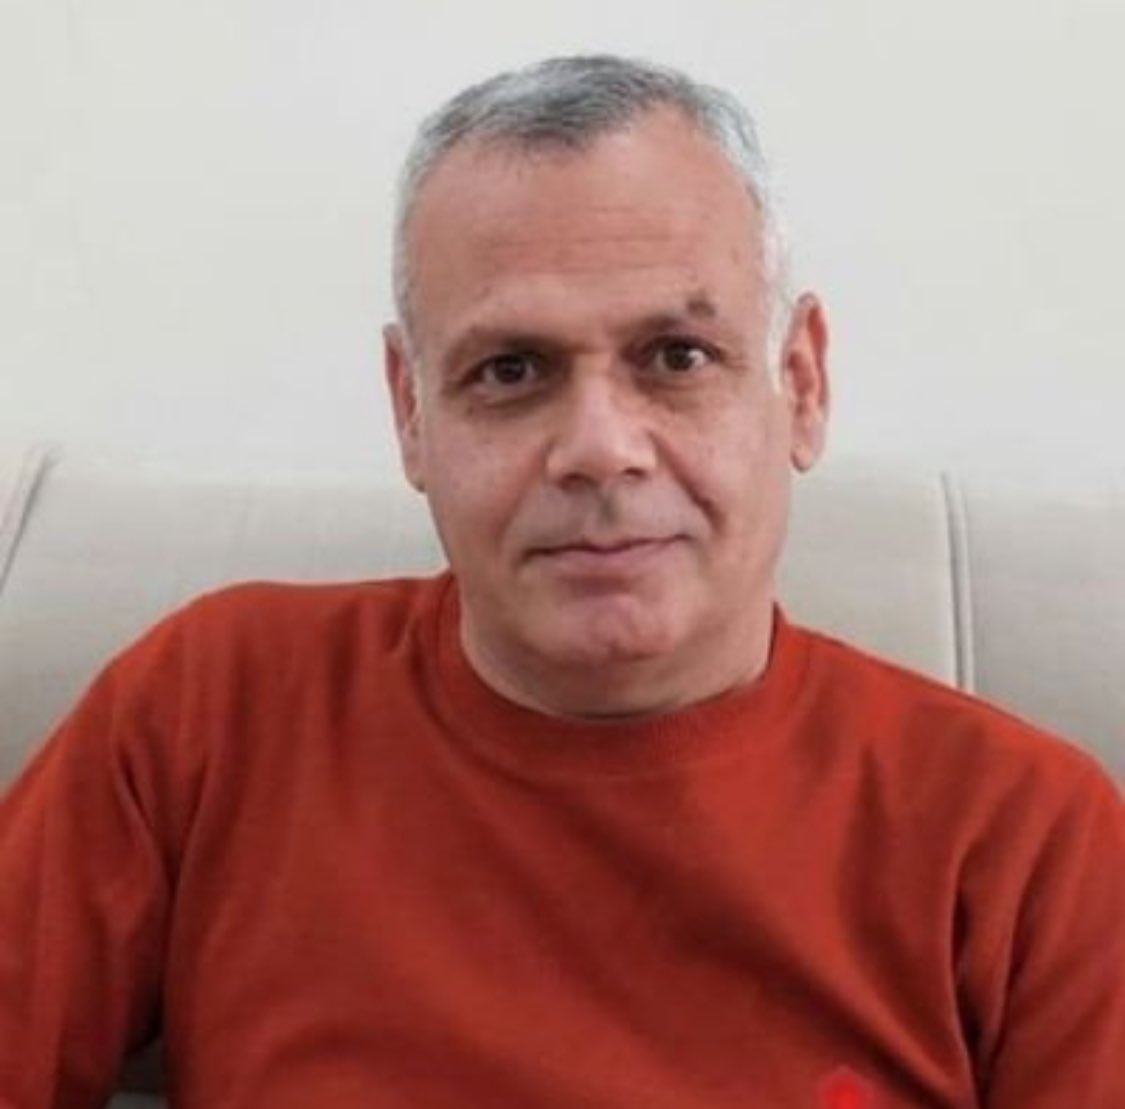 یکی از زندانیان پادشاهی‌خواه در بند ضحاک، #حجت‌الله_رافعی معلم بازنشسته و فعال سیاسی است.

ایشون چند روز قبل از سالگرد مهسا بازداشت شد و خبری ازشون بعد از بازداشت در دست نیست.